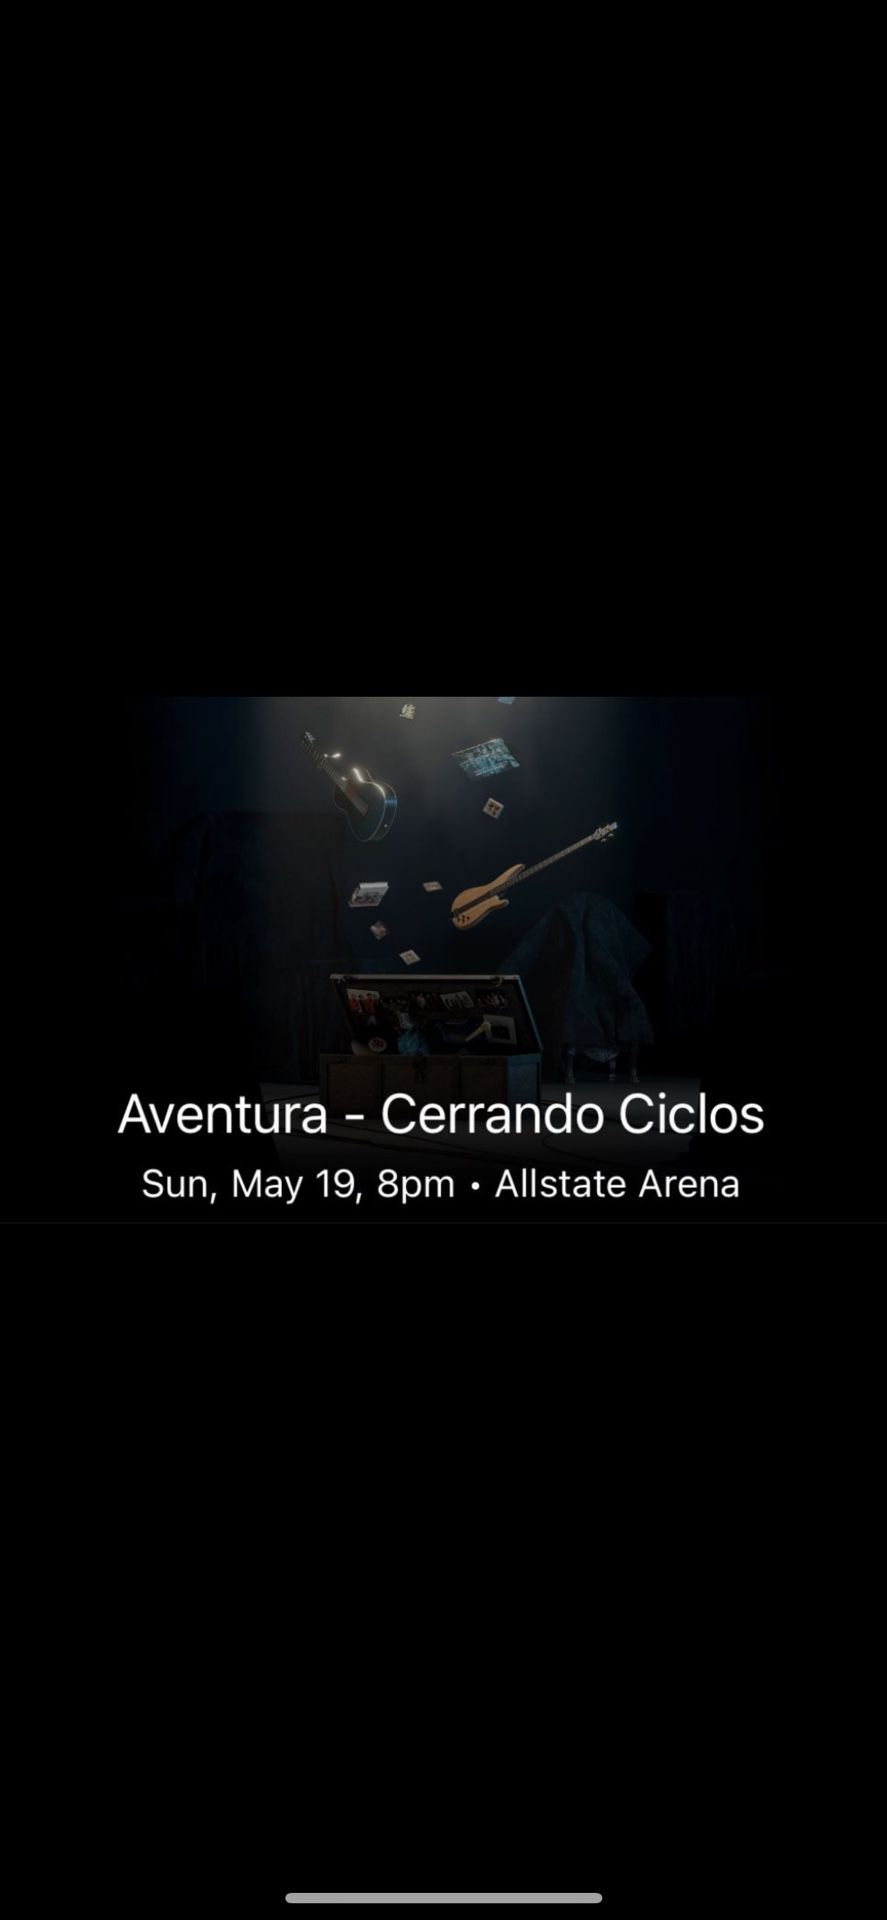 2 Aventura - Cerrando Ciclos Tickets for May 19